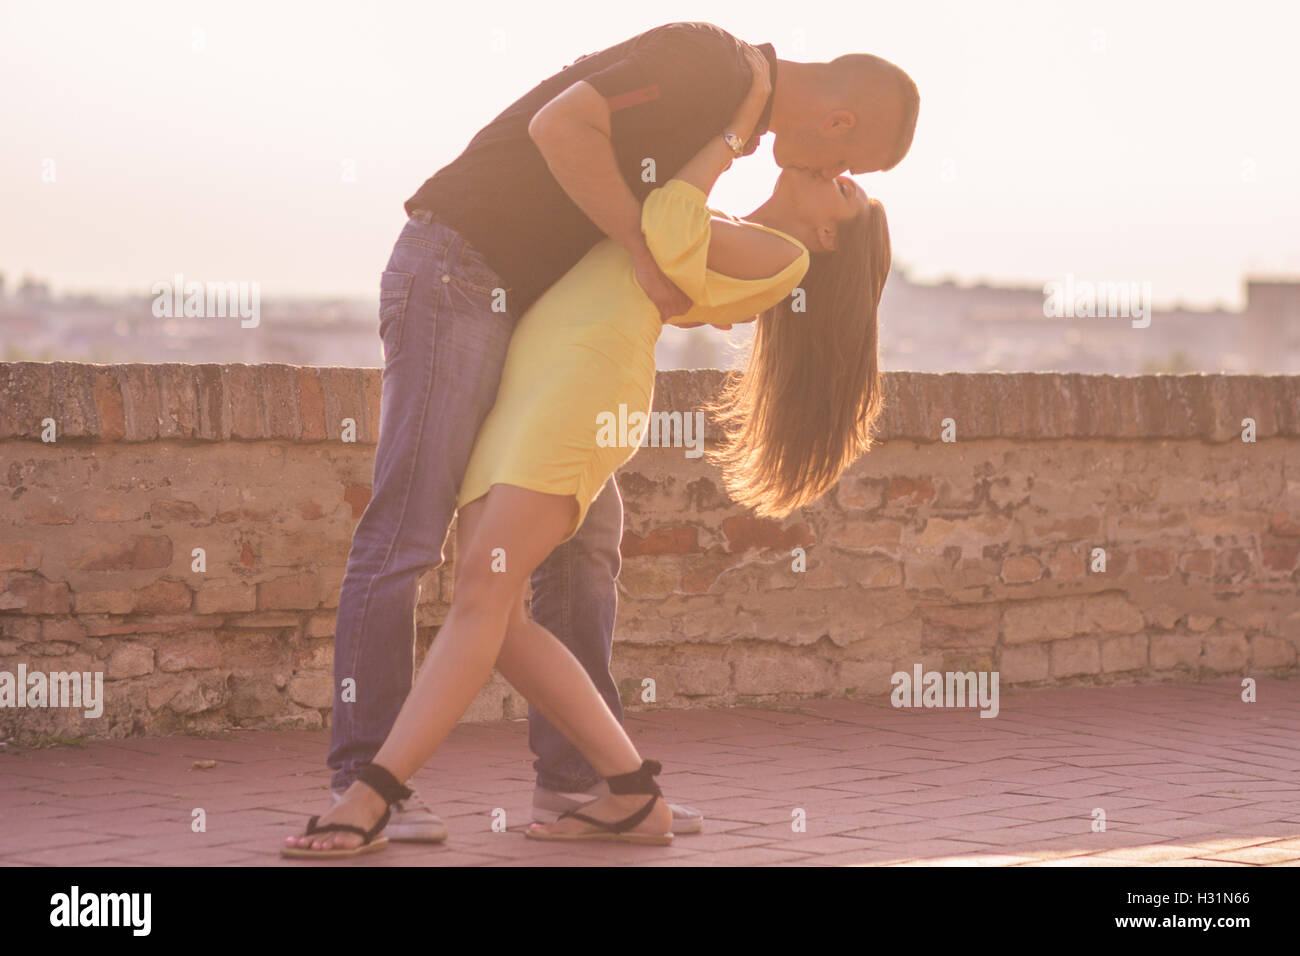 Film baisers poser, man holding femme jeune couple d'armes Banque D'Images